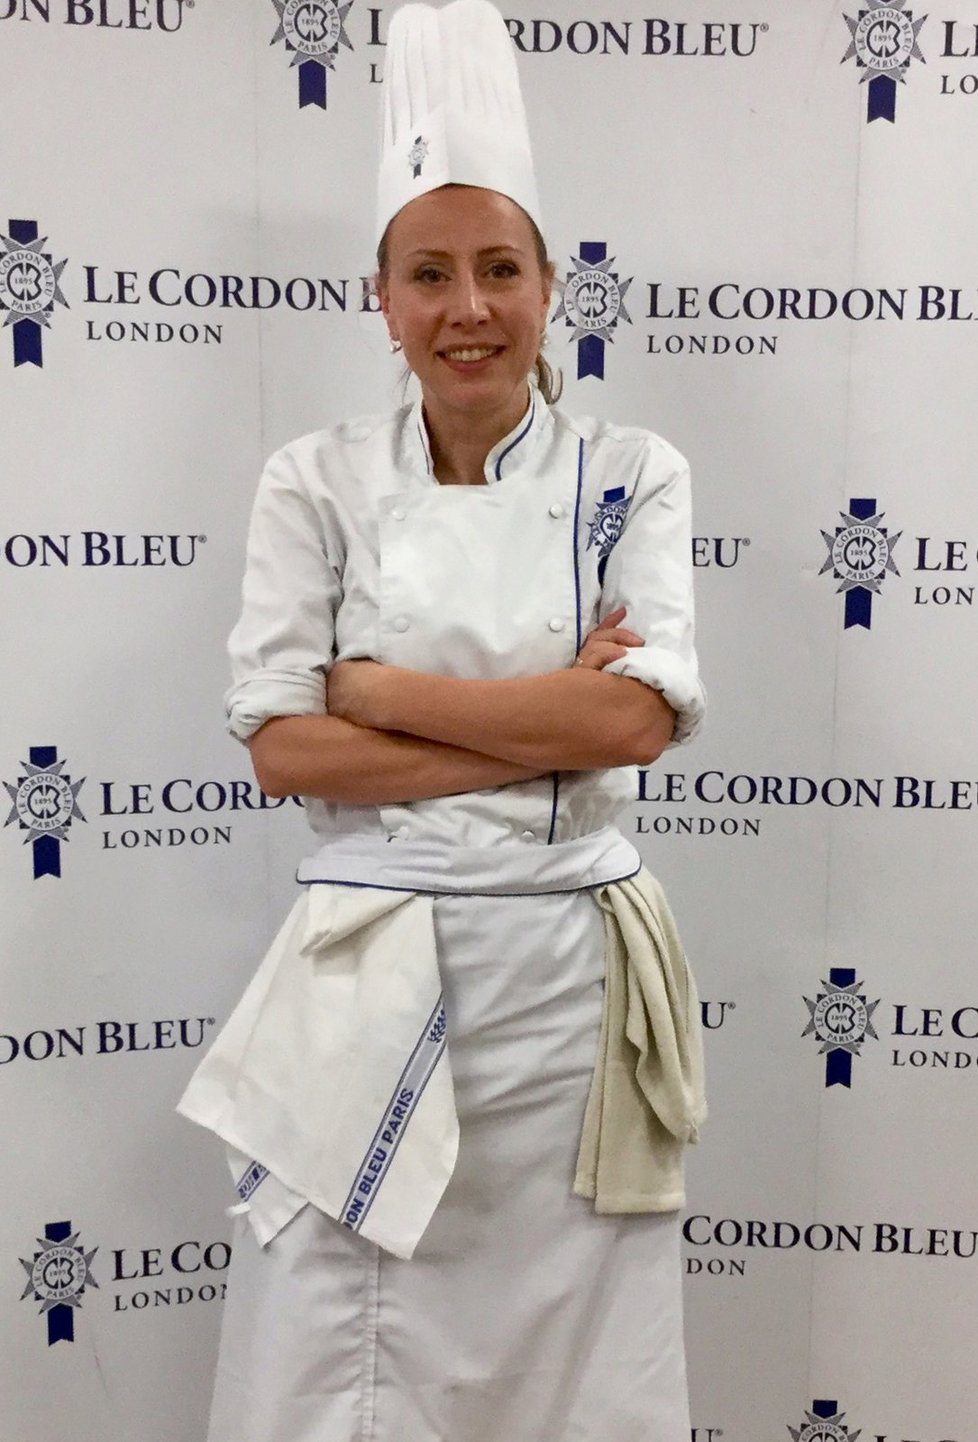 Kateřina Bursíková Jacques vystudovala v Londýně prestižní kuchařskou školu a je profesionální kuchařkou